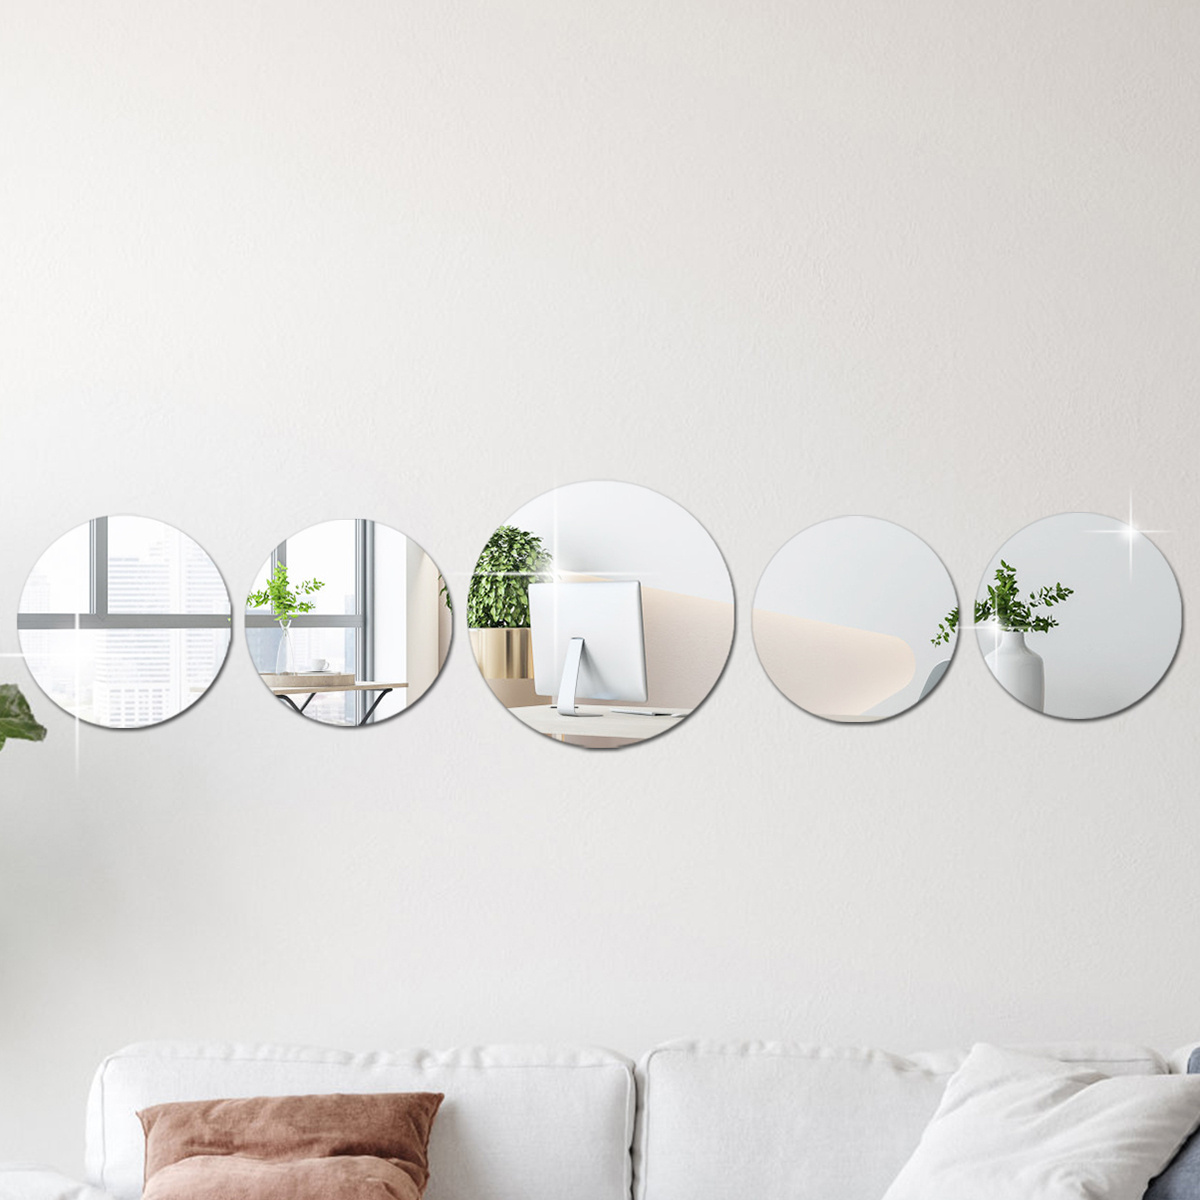 3d autoadhesivo espejo adhesivo de pared/acrílico rectángulo oval fondo  espejo pegatina de pared decoración para el hogar arte de la pared  decoración